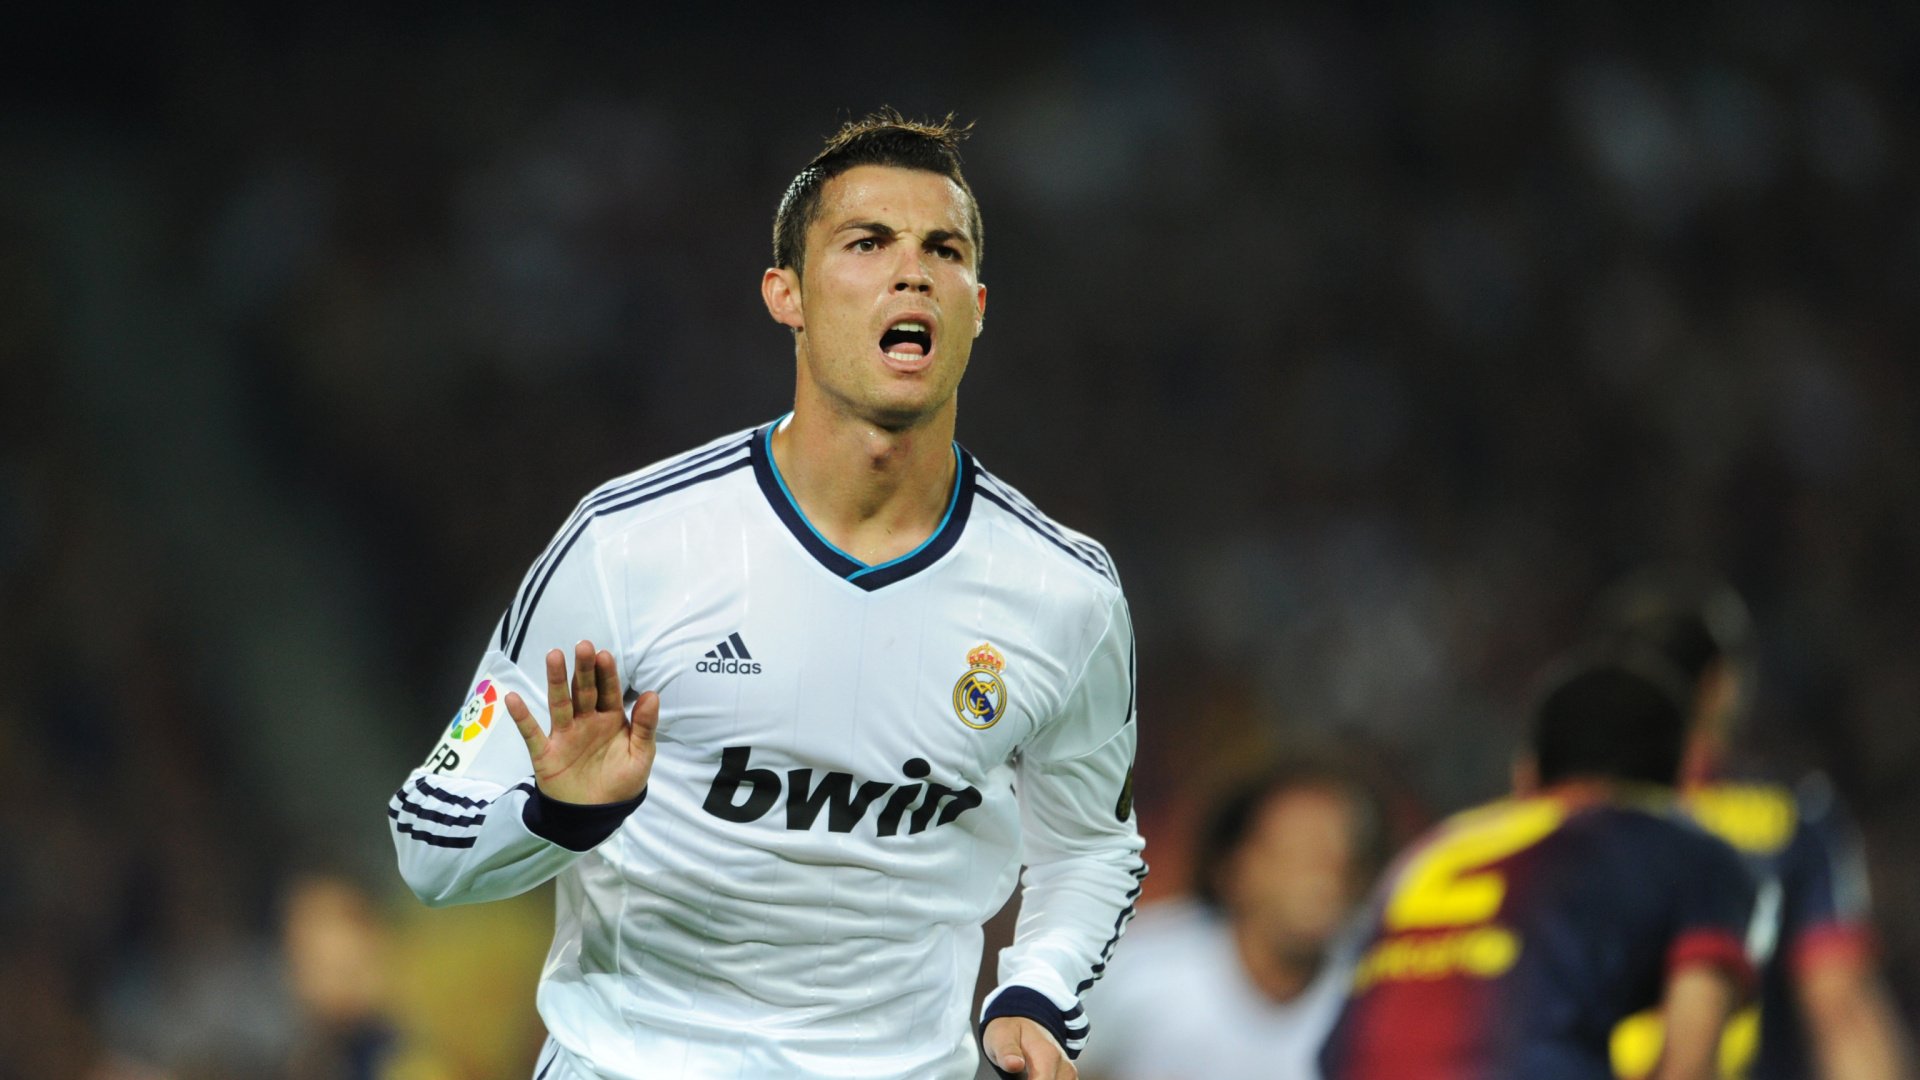 Ronaldo 4K Wallpapers